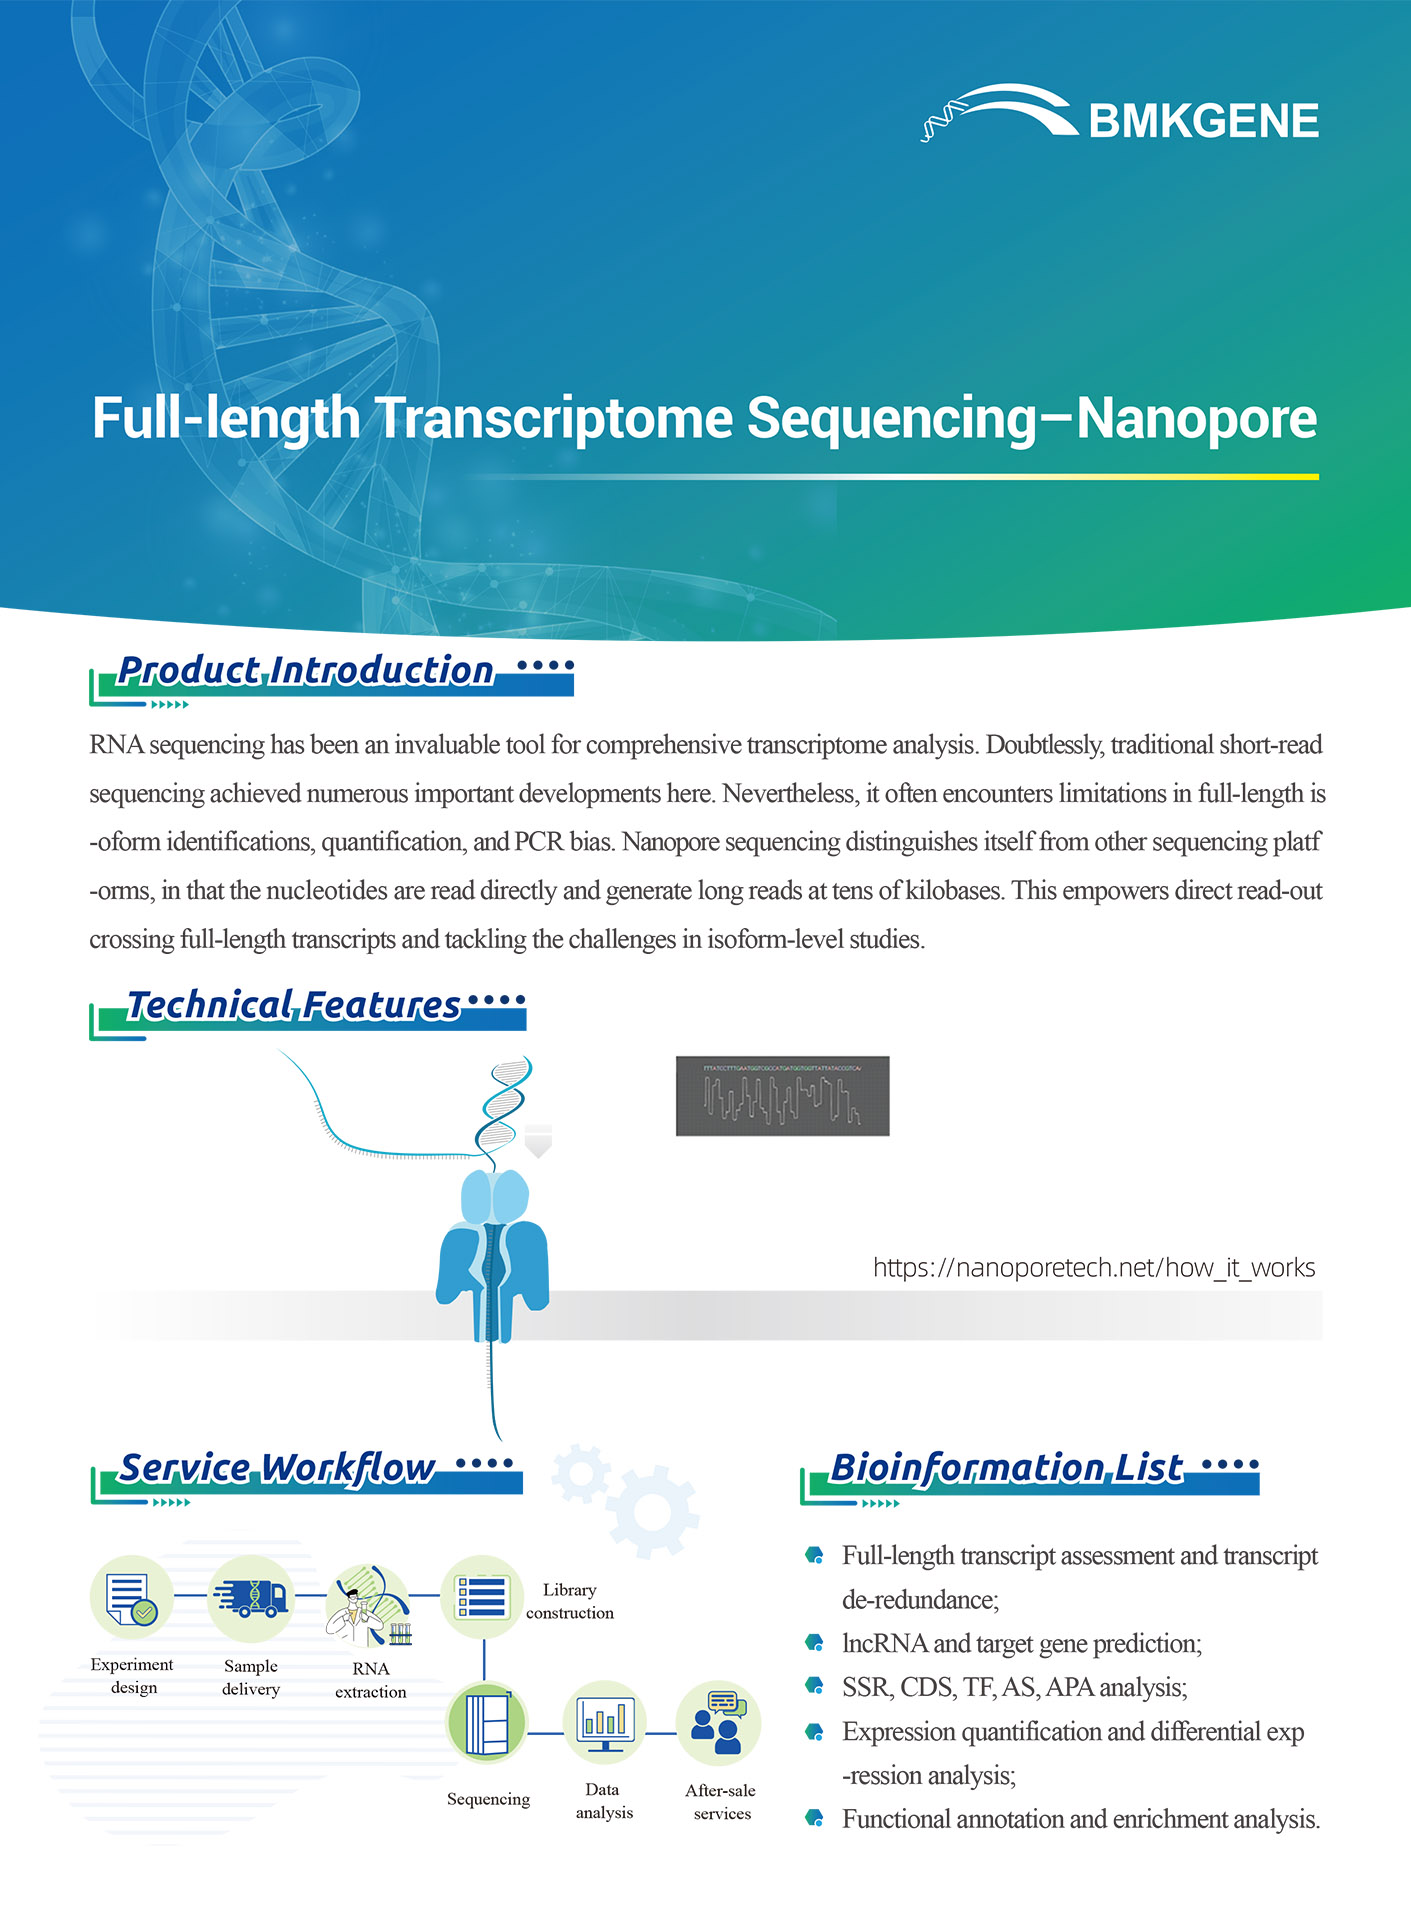 http://www.bmkgene.com/uploads/Full-length-Transcriptome-Sequencing–Nanopore-BMKGENE-2023.123.pdf